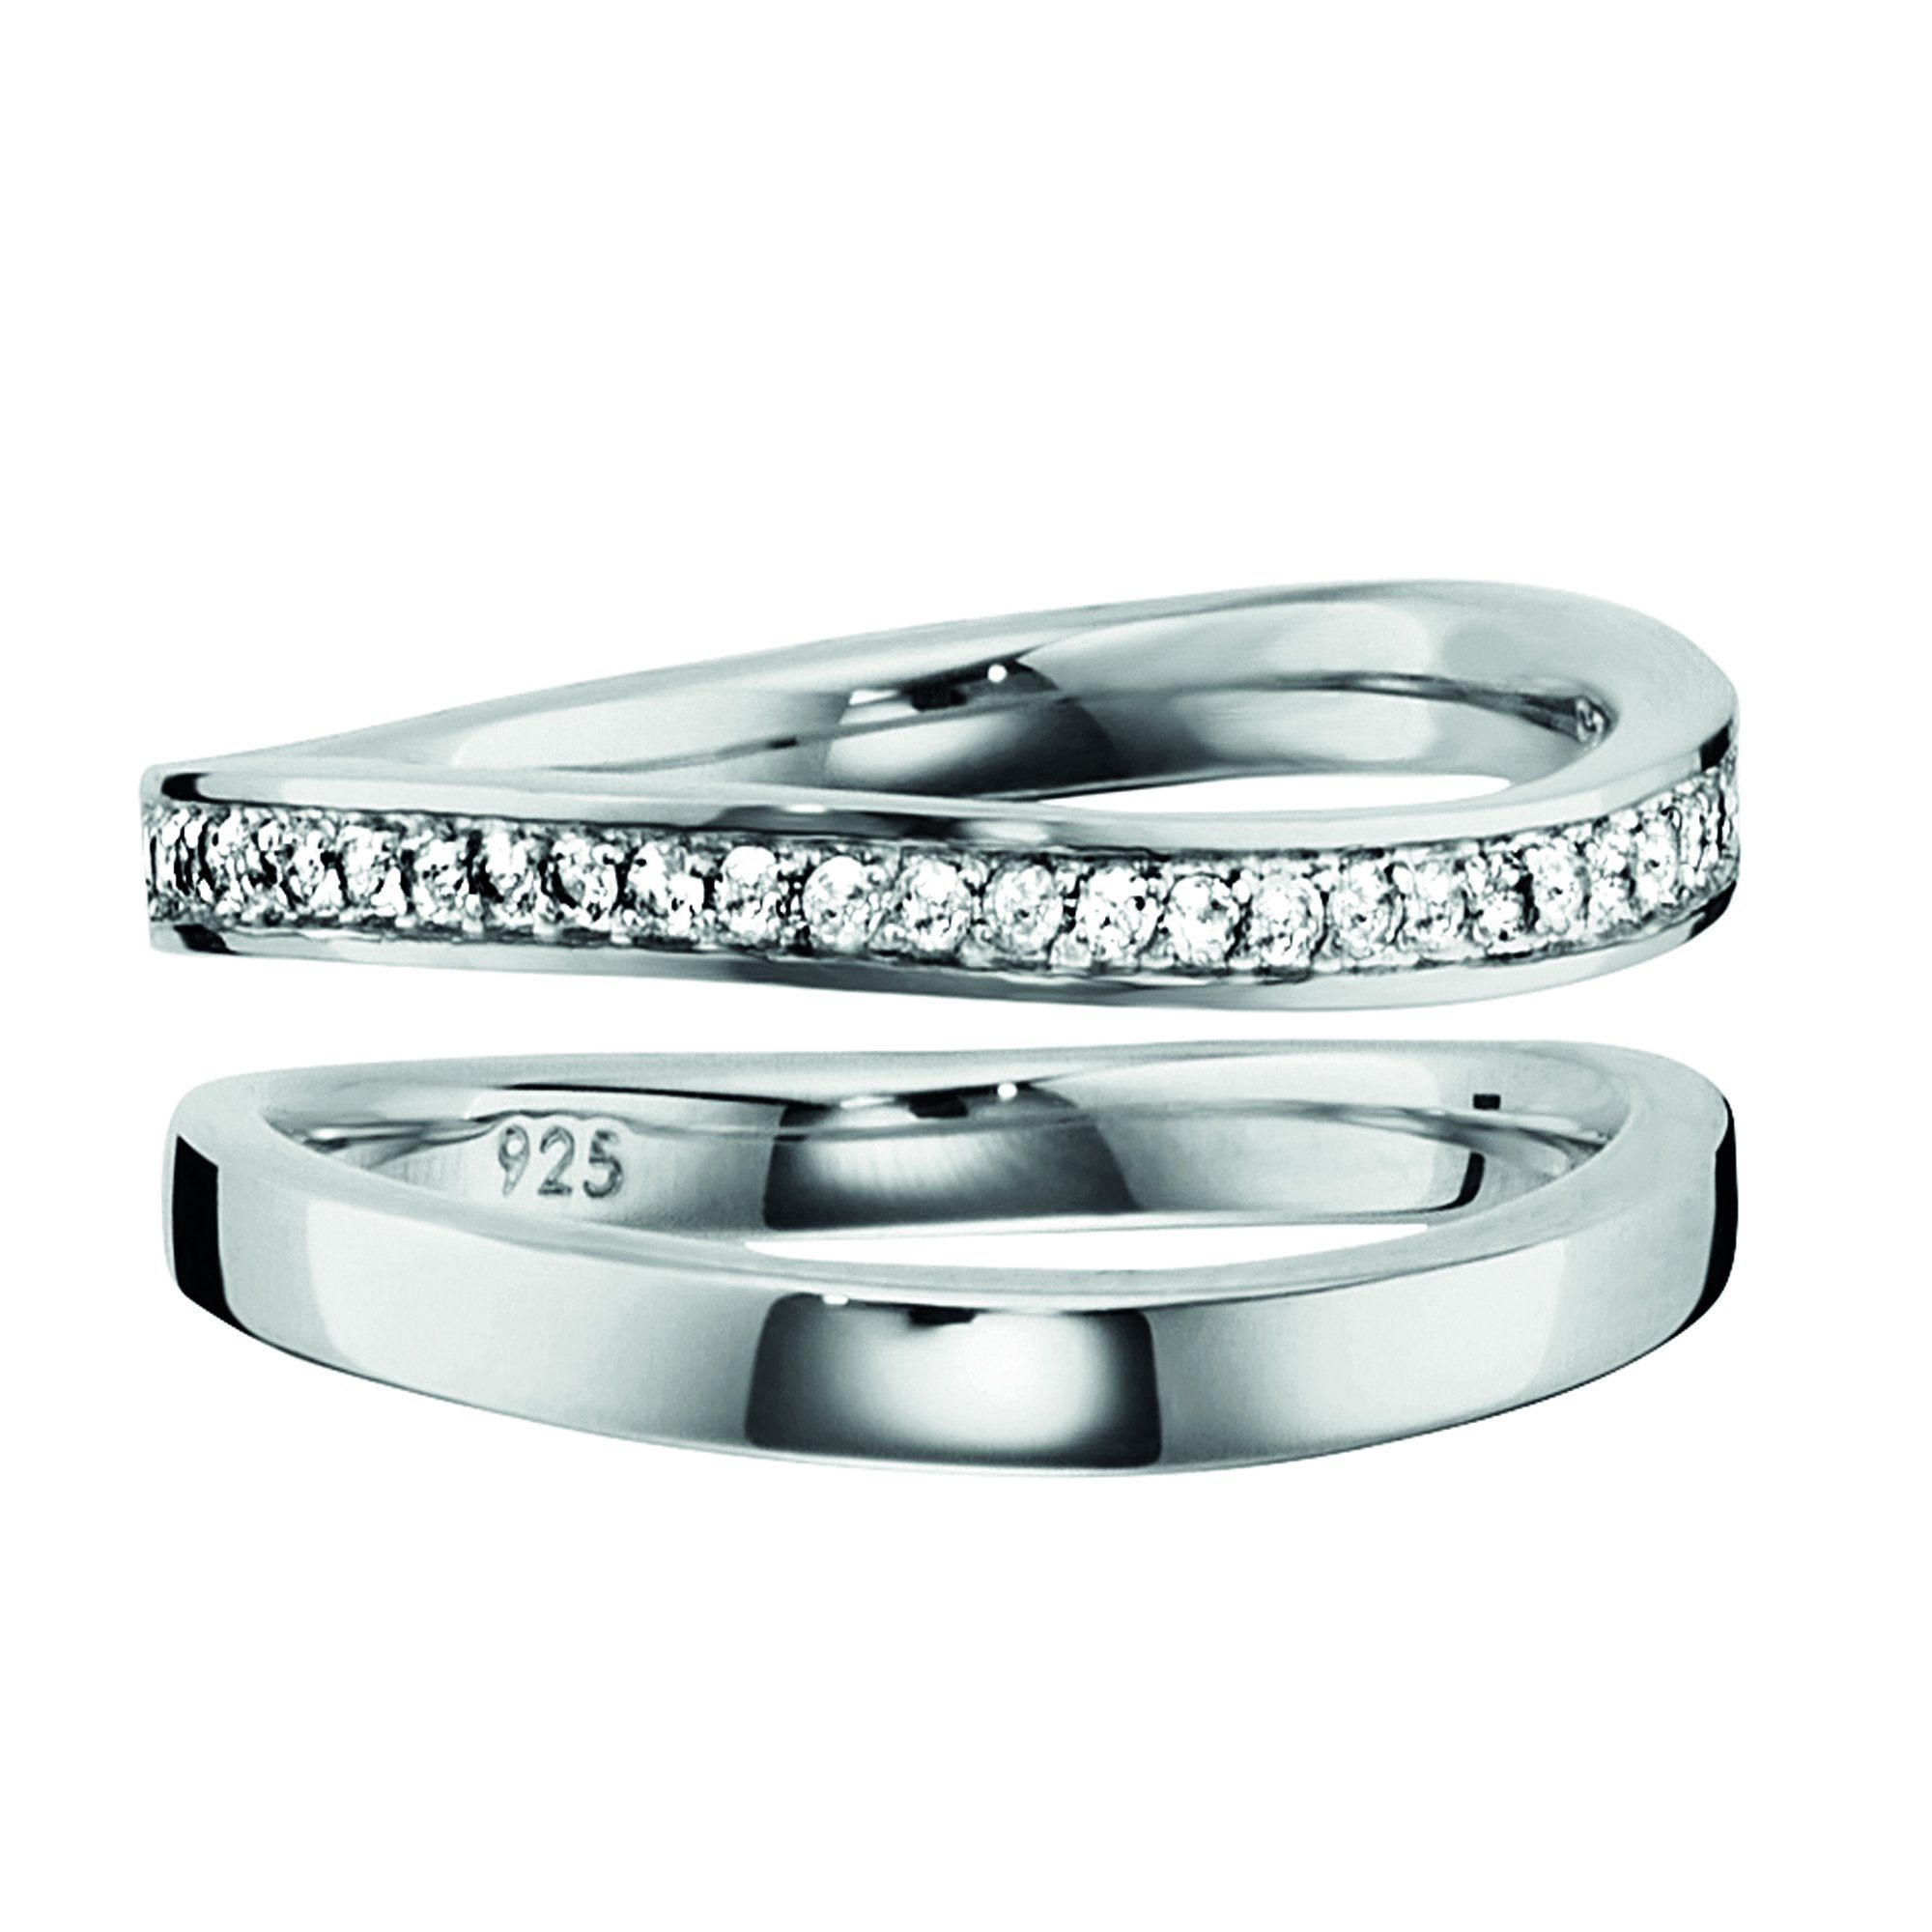 Neue Artikel treffen nacheinander ein CAÏ Fingerring 925/- Sterling Silber Ringe rhodiniert werden können getragen Topas, hintereinander